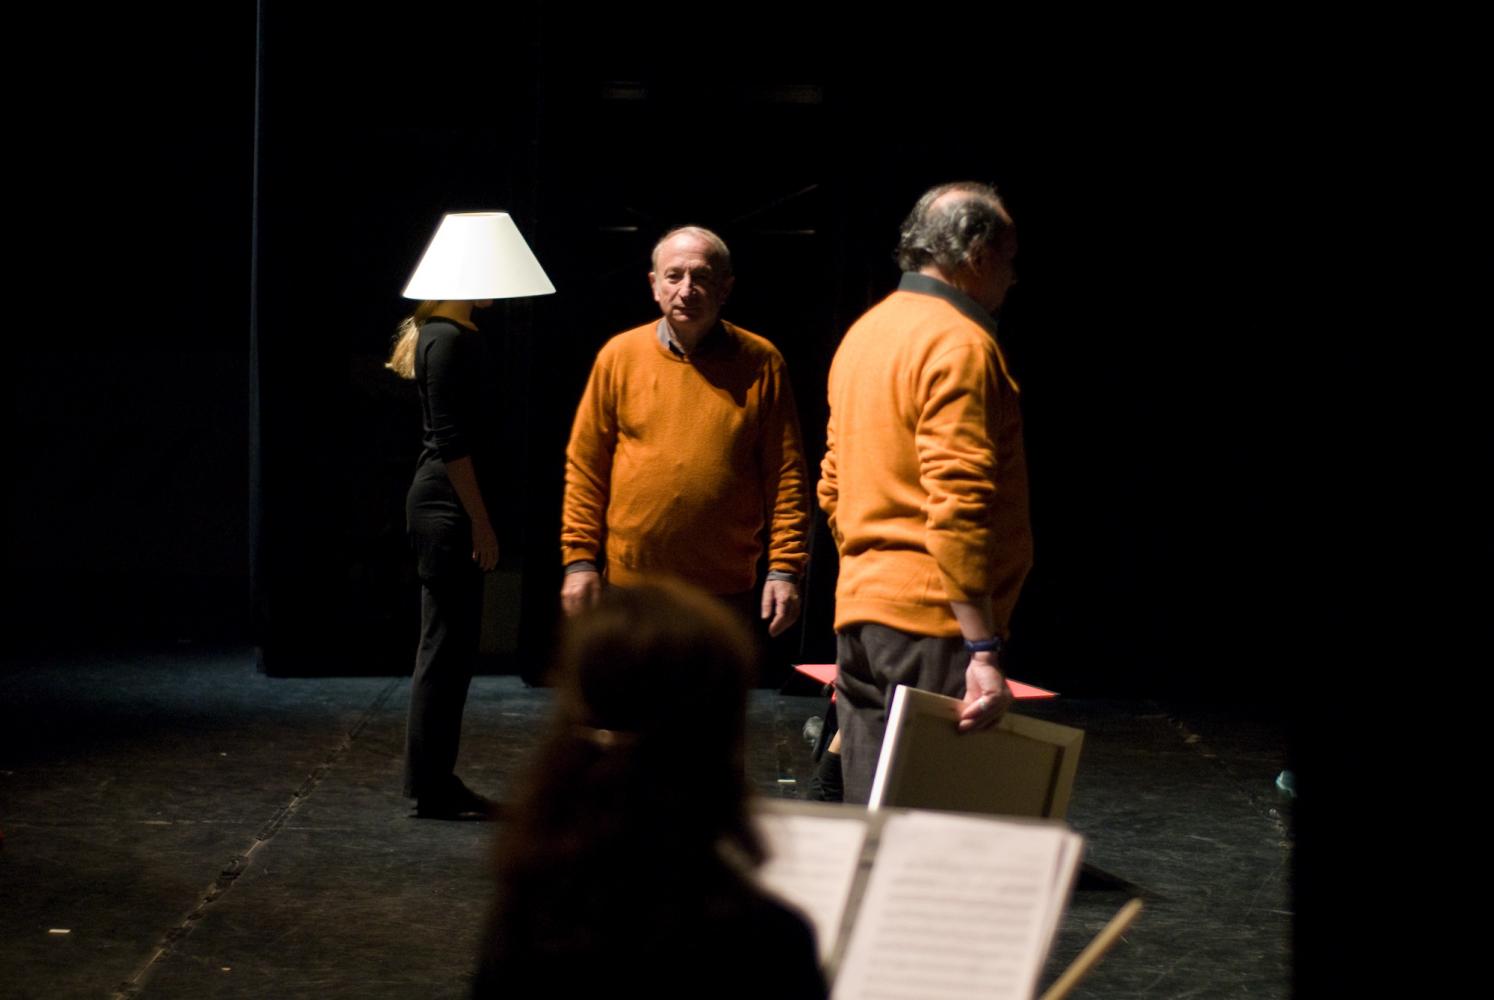 Derrière la silhouette d'une violoniste assise, les deux pères en pull-over orange et une choreute, en noir, avec un abat-jour sur la tête. Nanterre, octobre 2009.